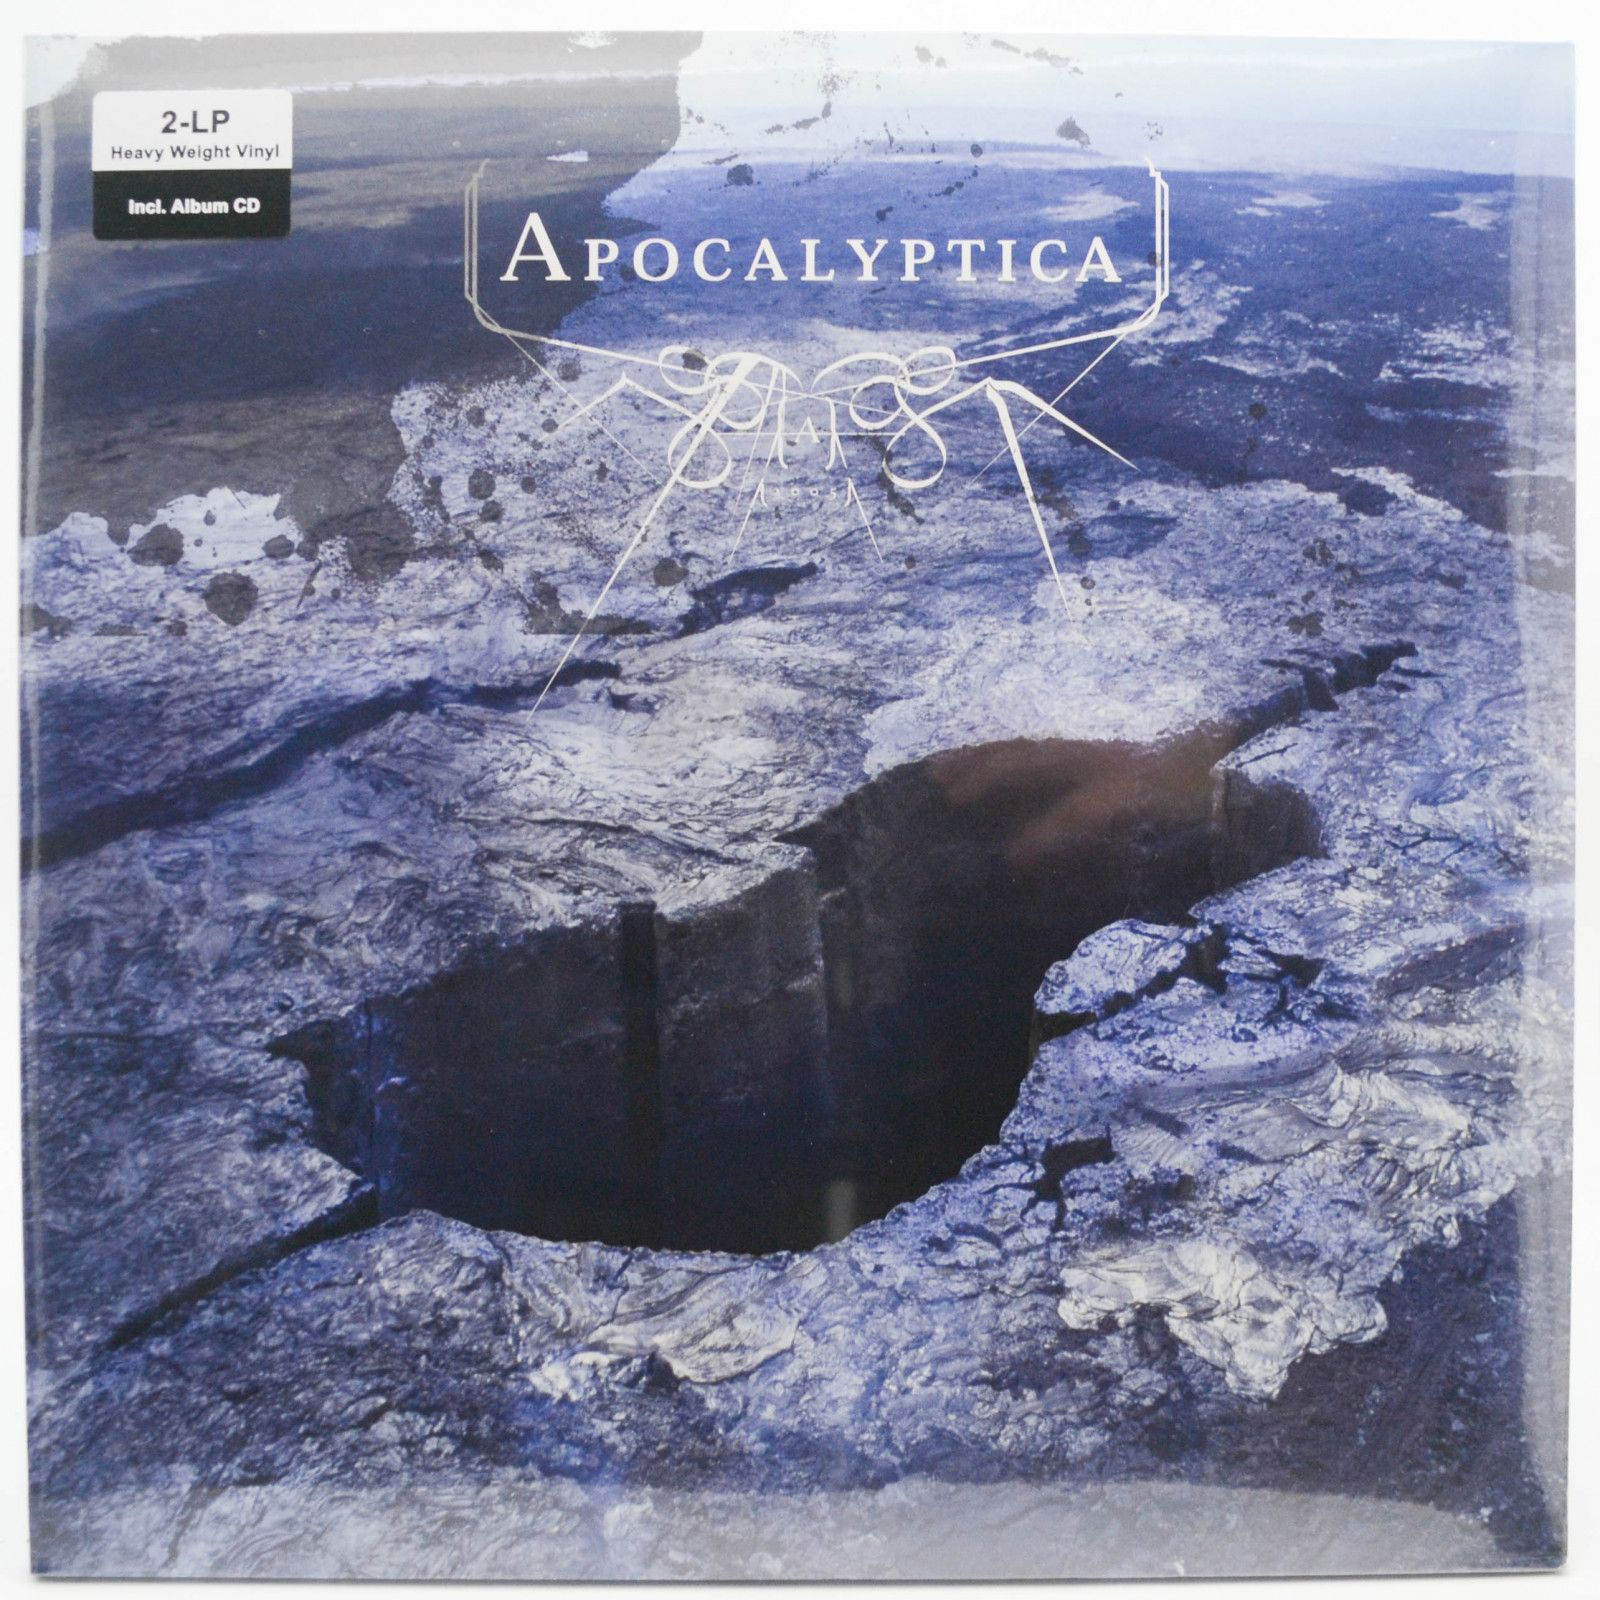 Apocalyptica — Apocalyptica (2LP + CD), 2005